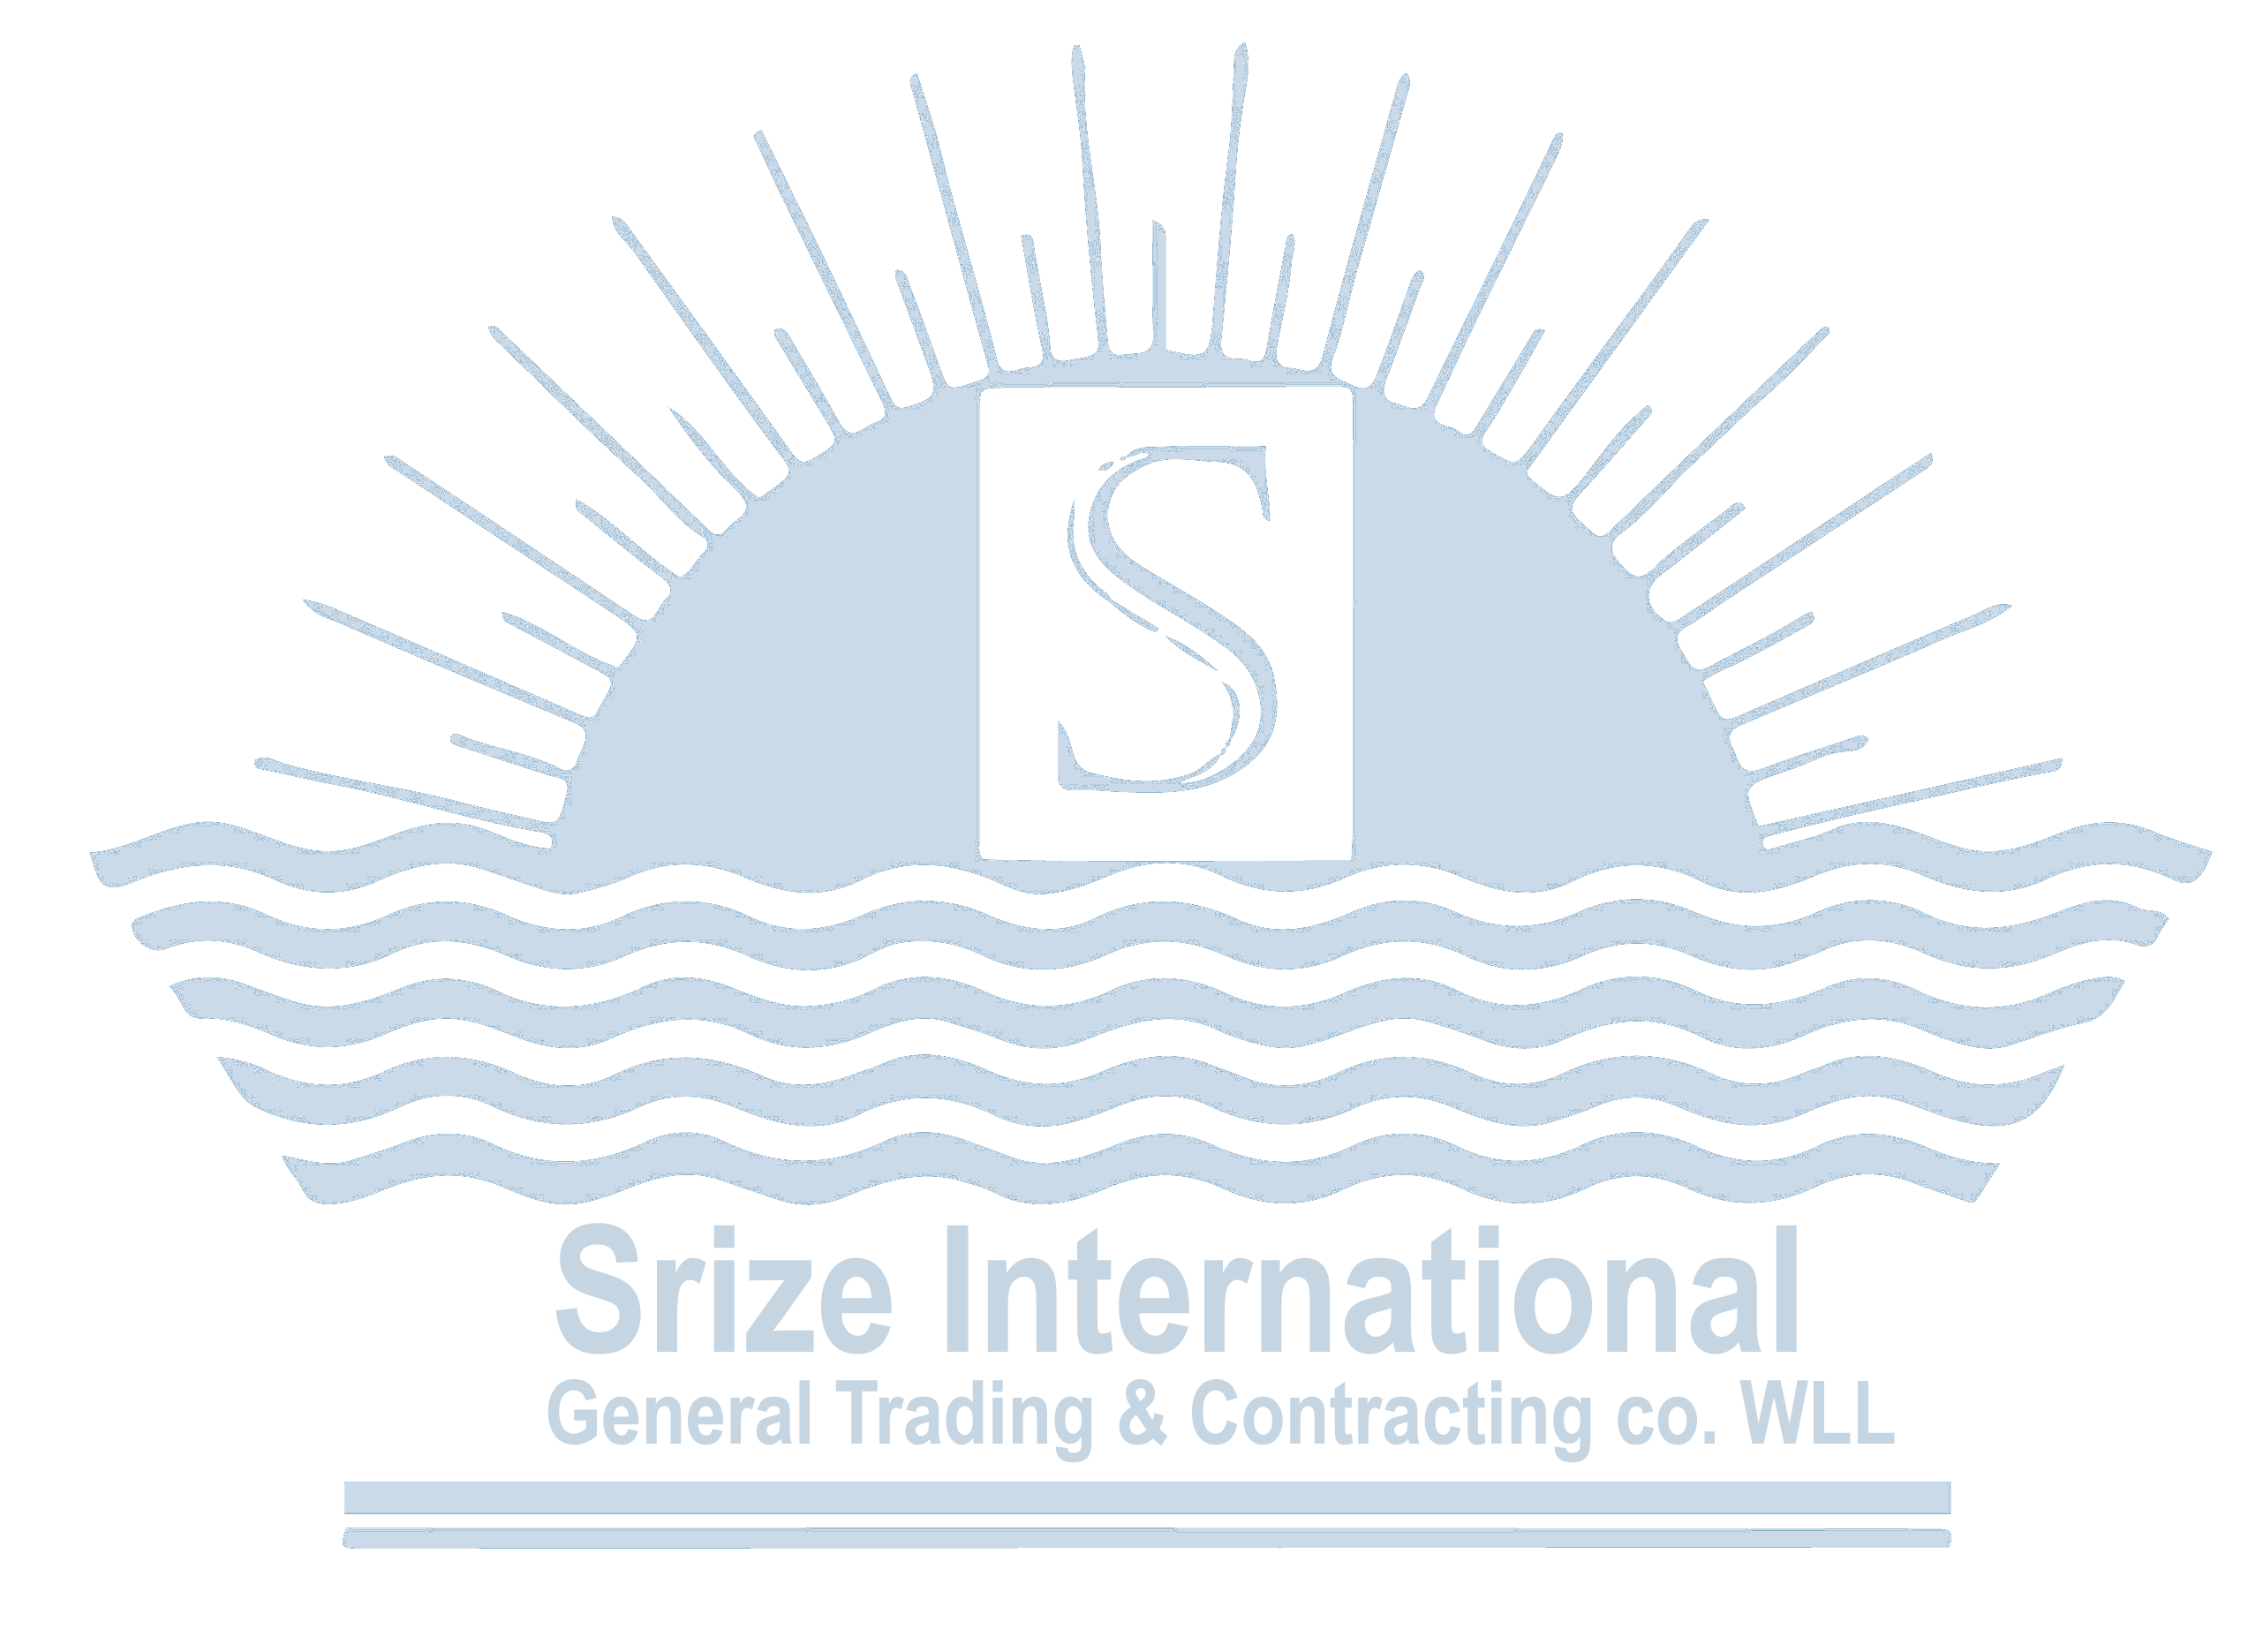 Srize International